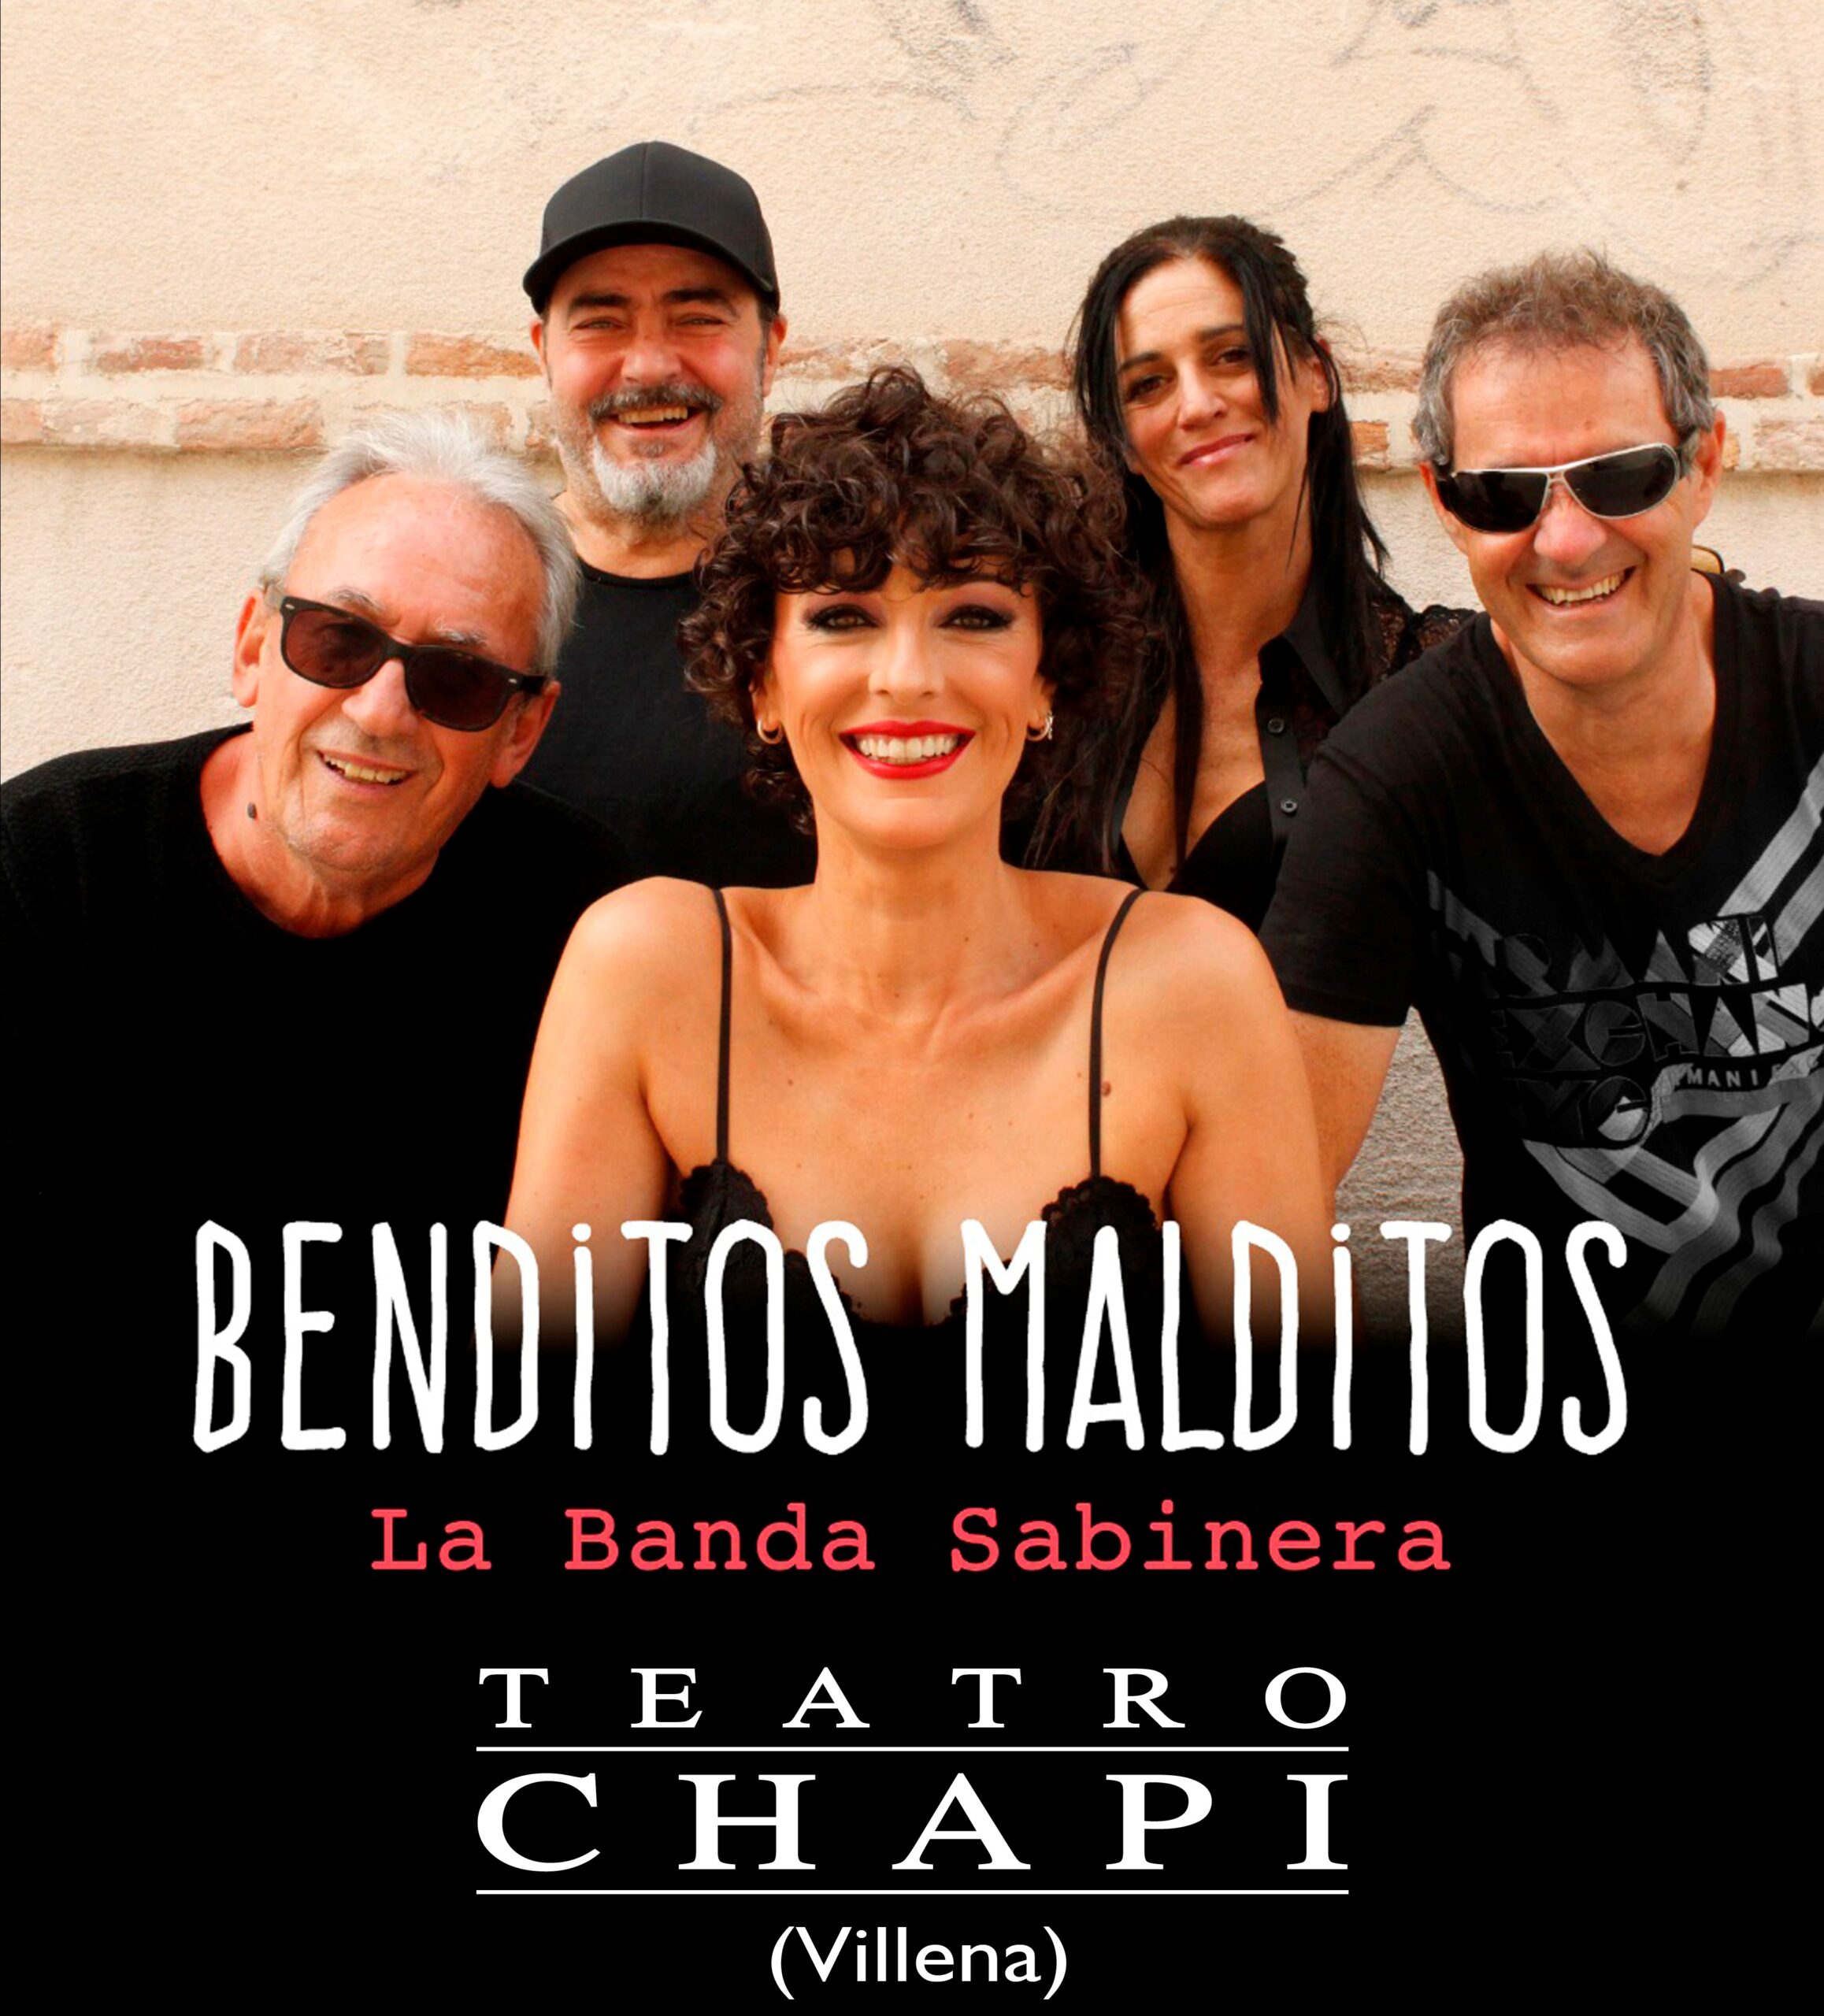 Arranca la programación de invierno-primavera 2022 del Teatro Chapí de Villena con “La Banda Sabinera”